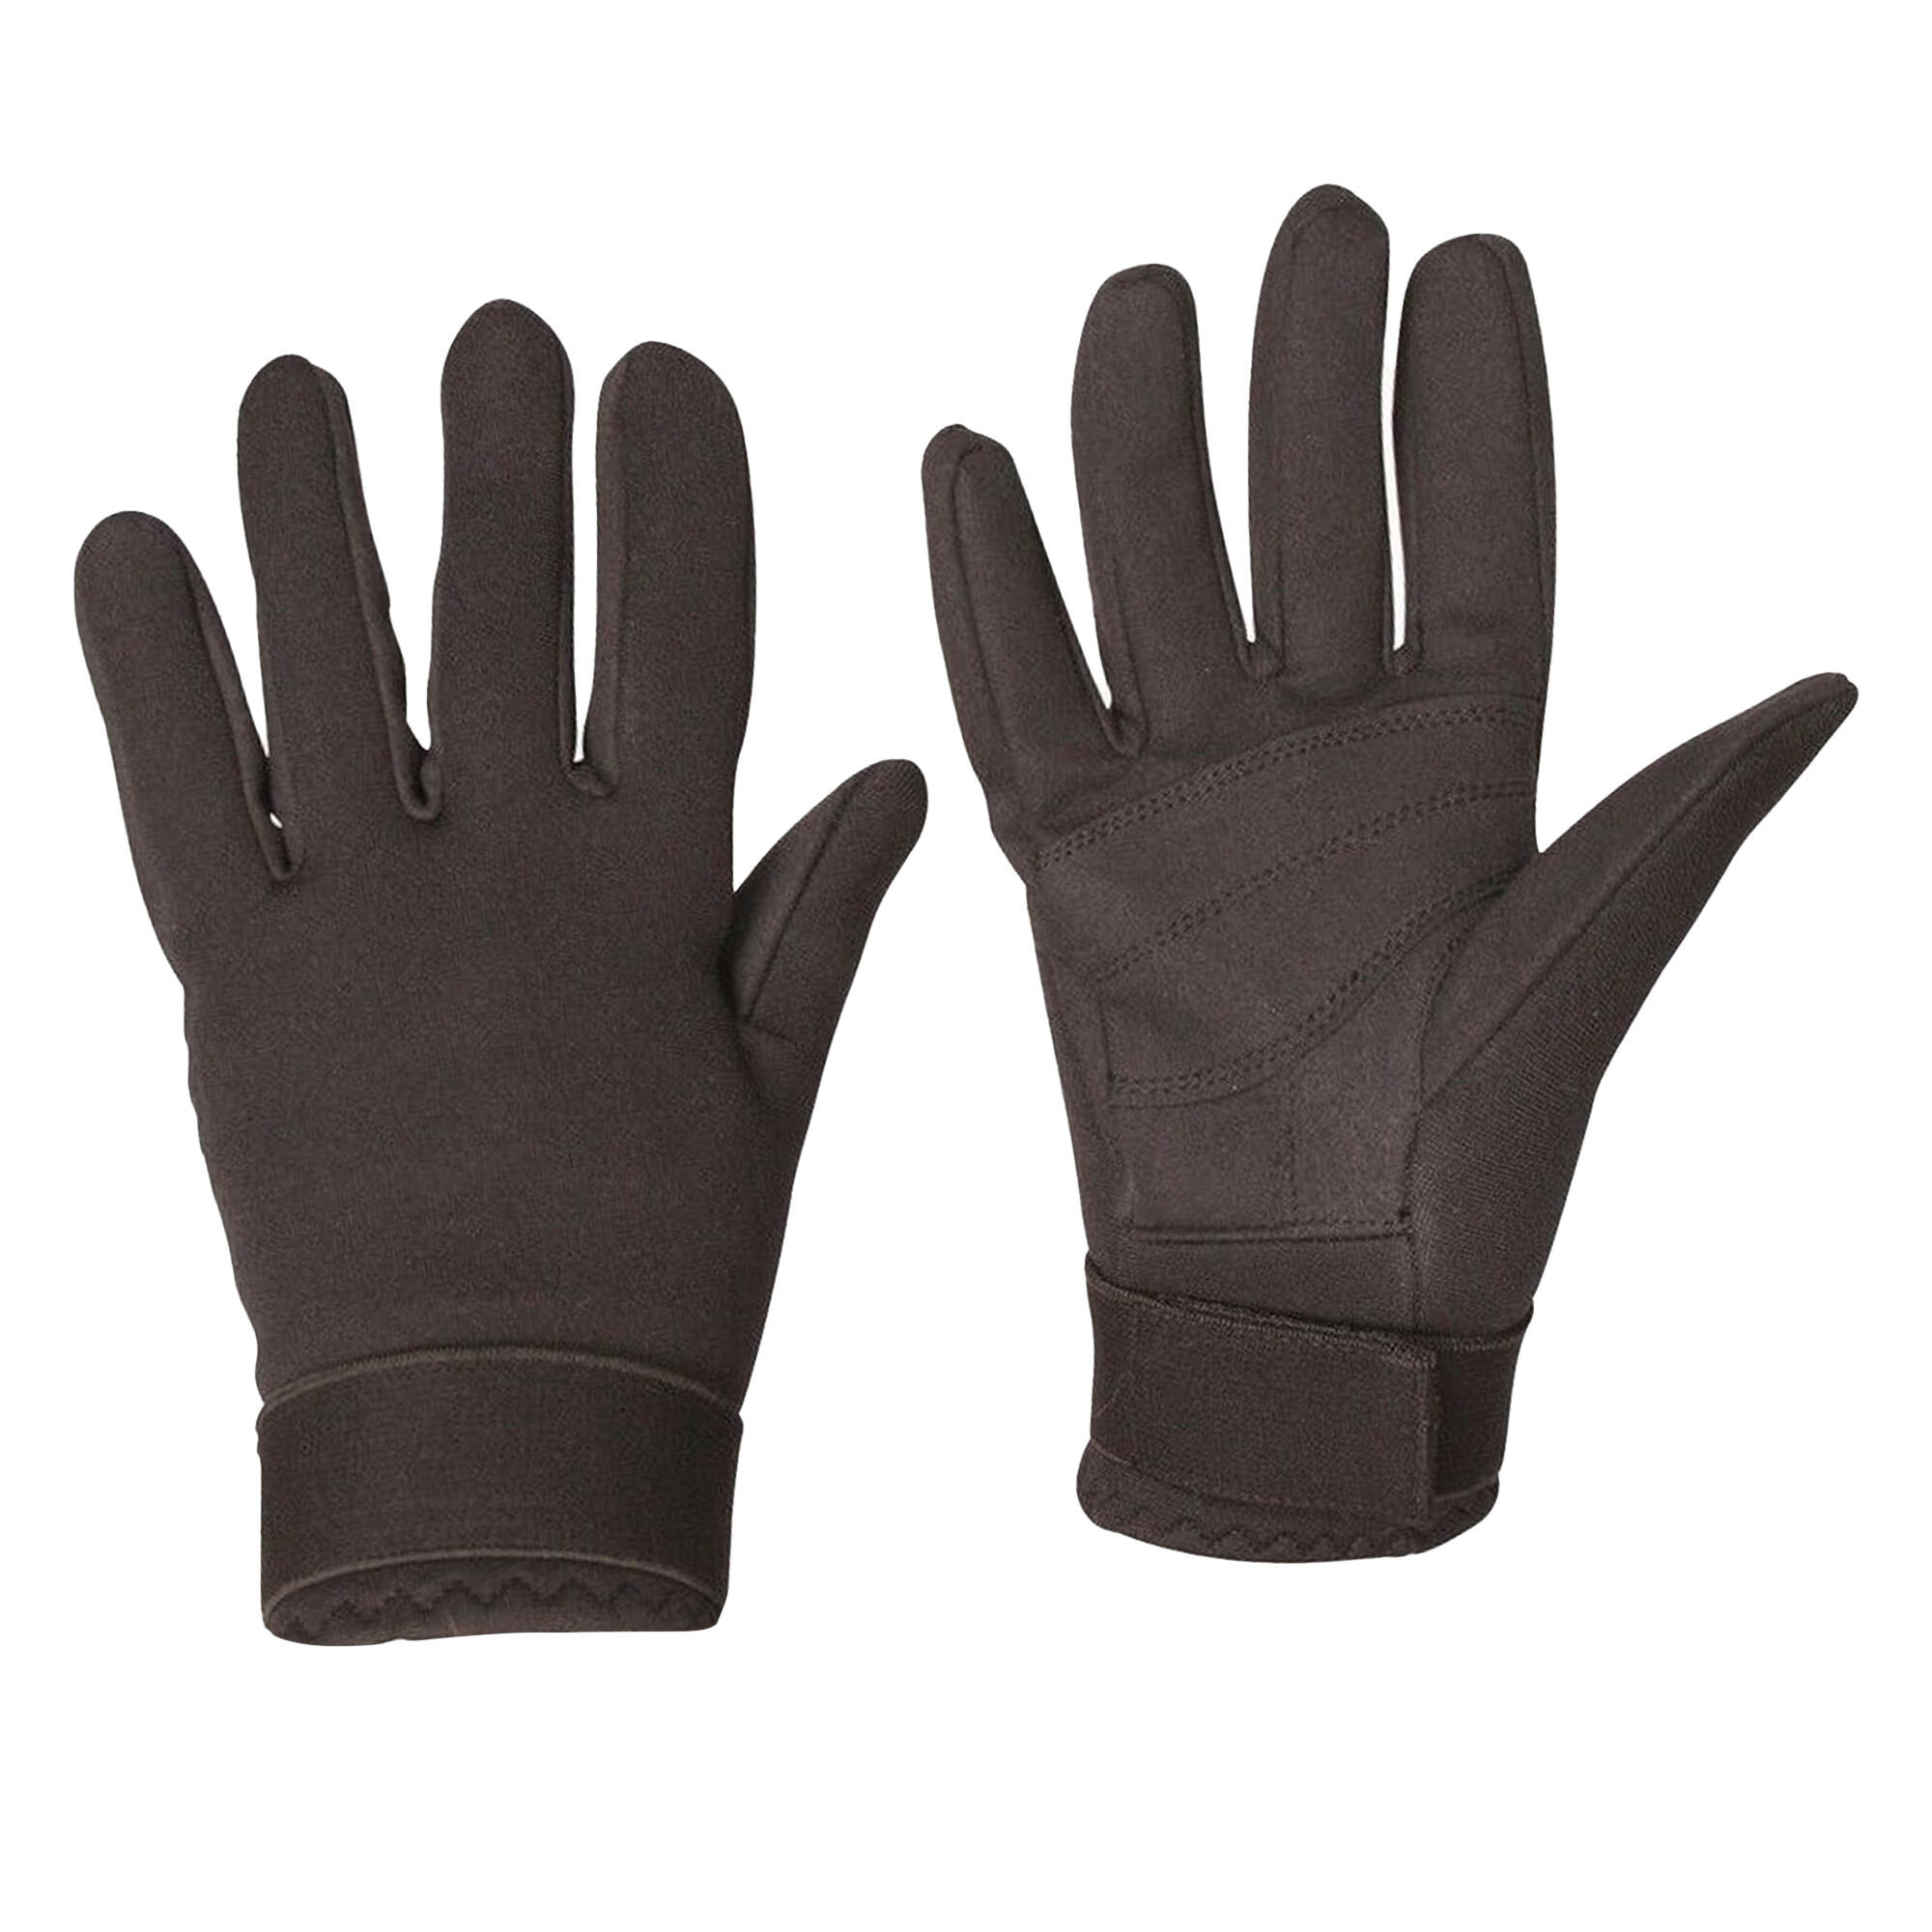 DUBLIN Unisex Neoprene Touch Fastening Riding Gloves (Black)